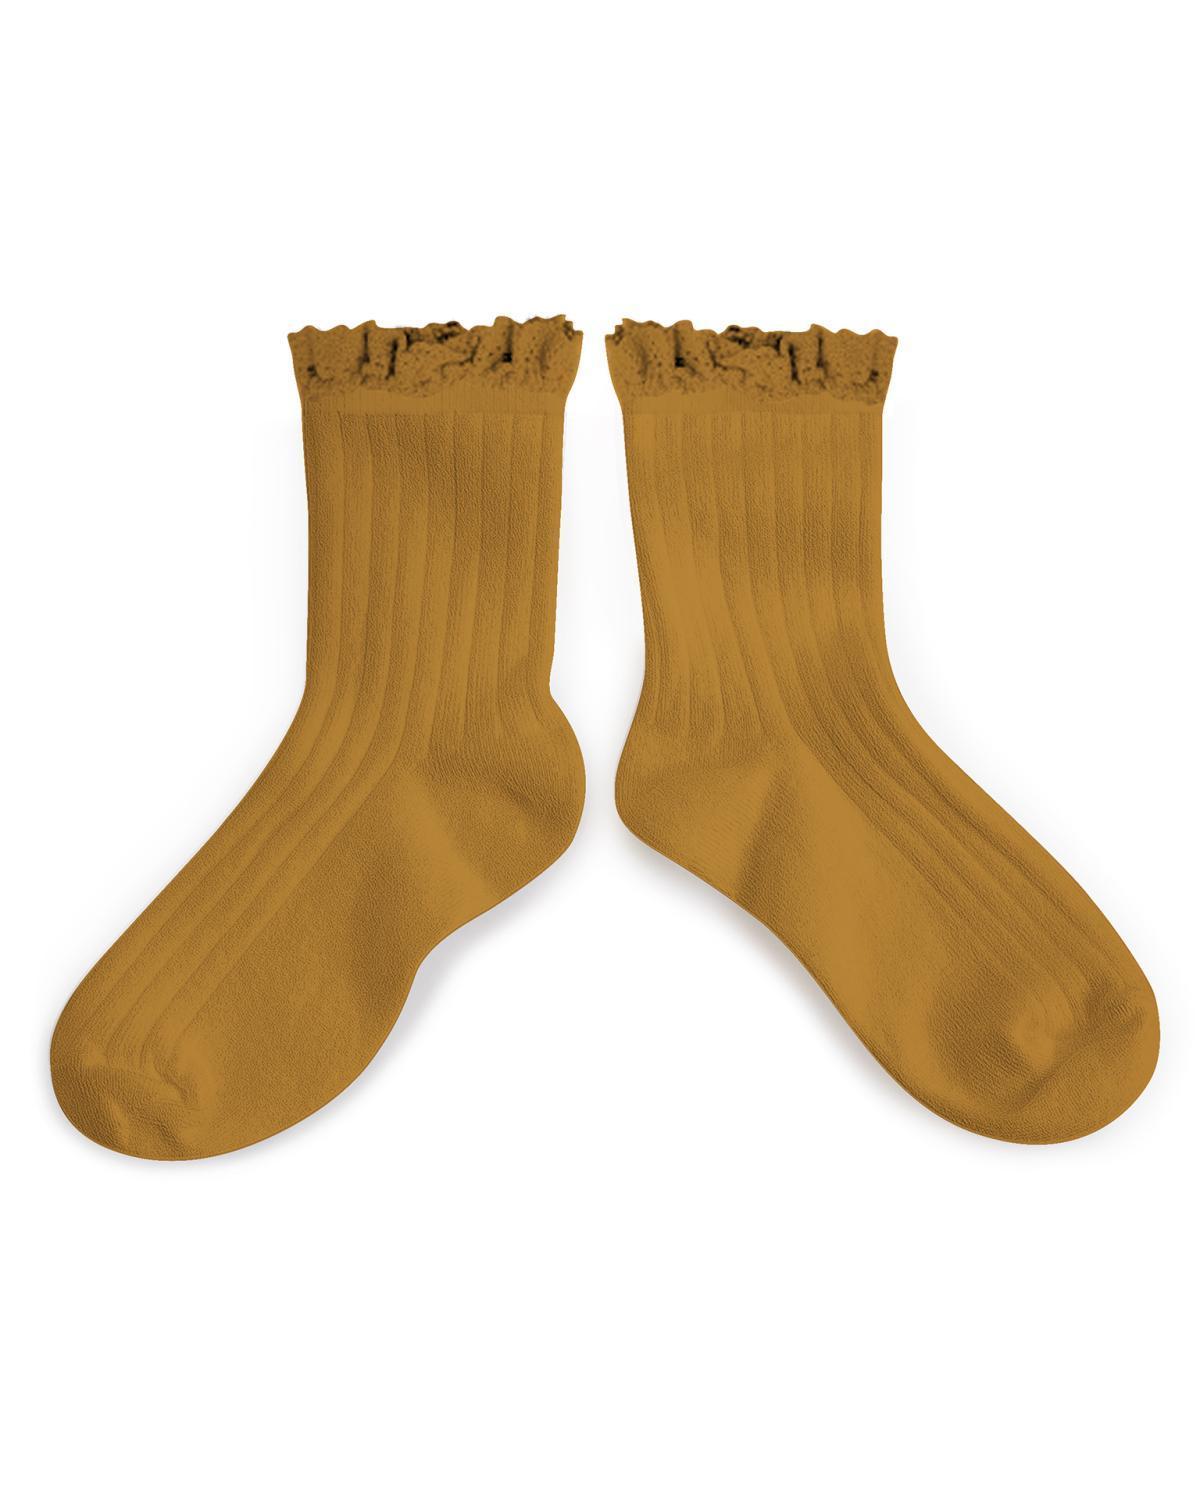 Little collegien accessories 18/20 ruffle trim ankle socks in moutarde de dijon